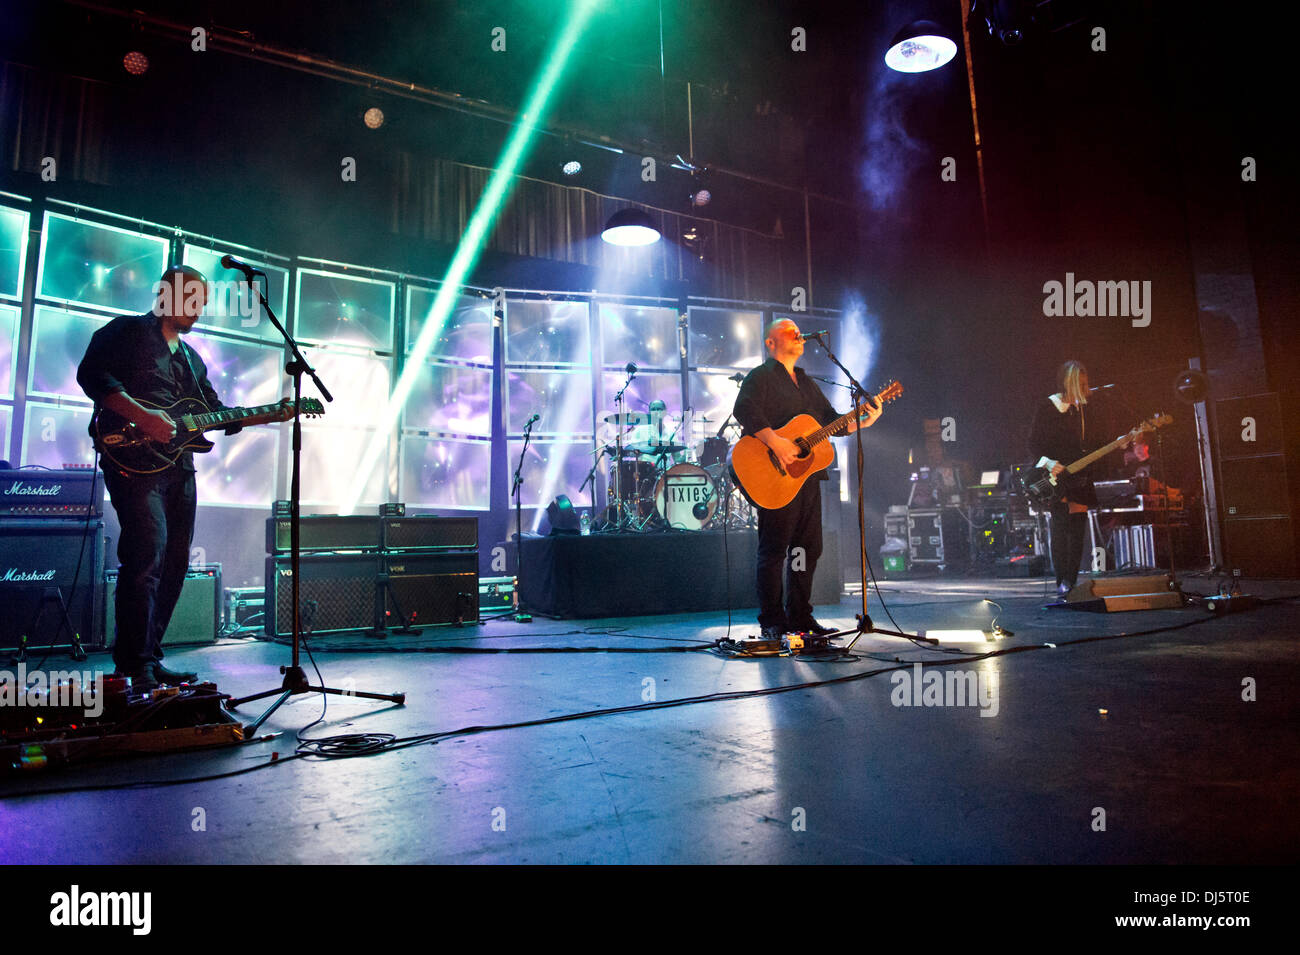 Manchester, Regno Unito. Il 21 novembre 2013. Noi rock band Pixies in concerto al O2 Apollo, Manchester, Regno Unito. Joey Santiago (sinistra) e Black Francis (centro). Credito: John Bentley/Alamy Live News Foto Stock